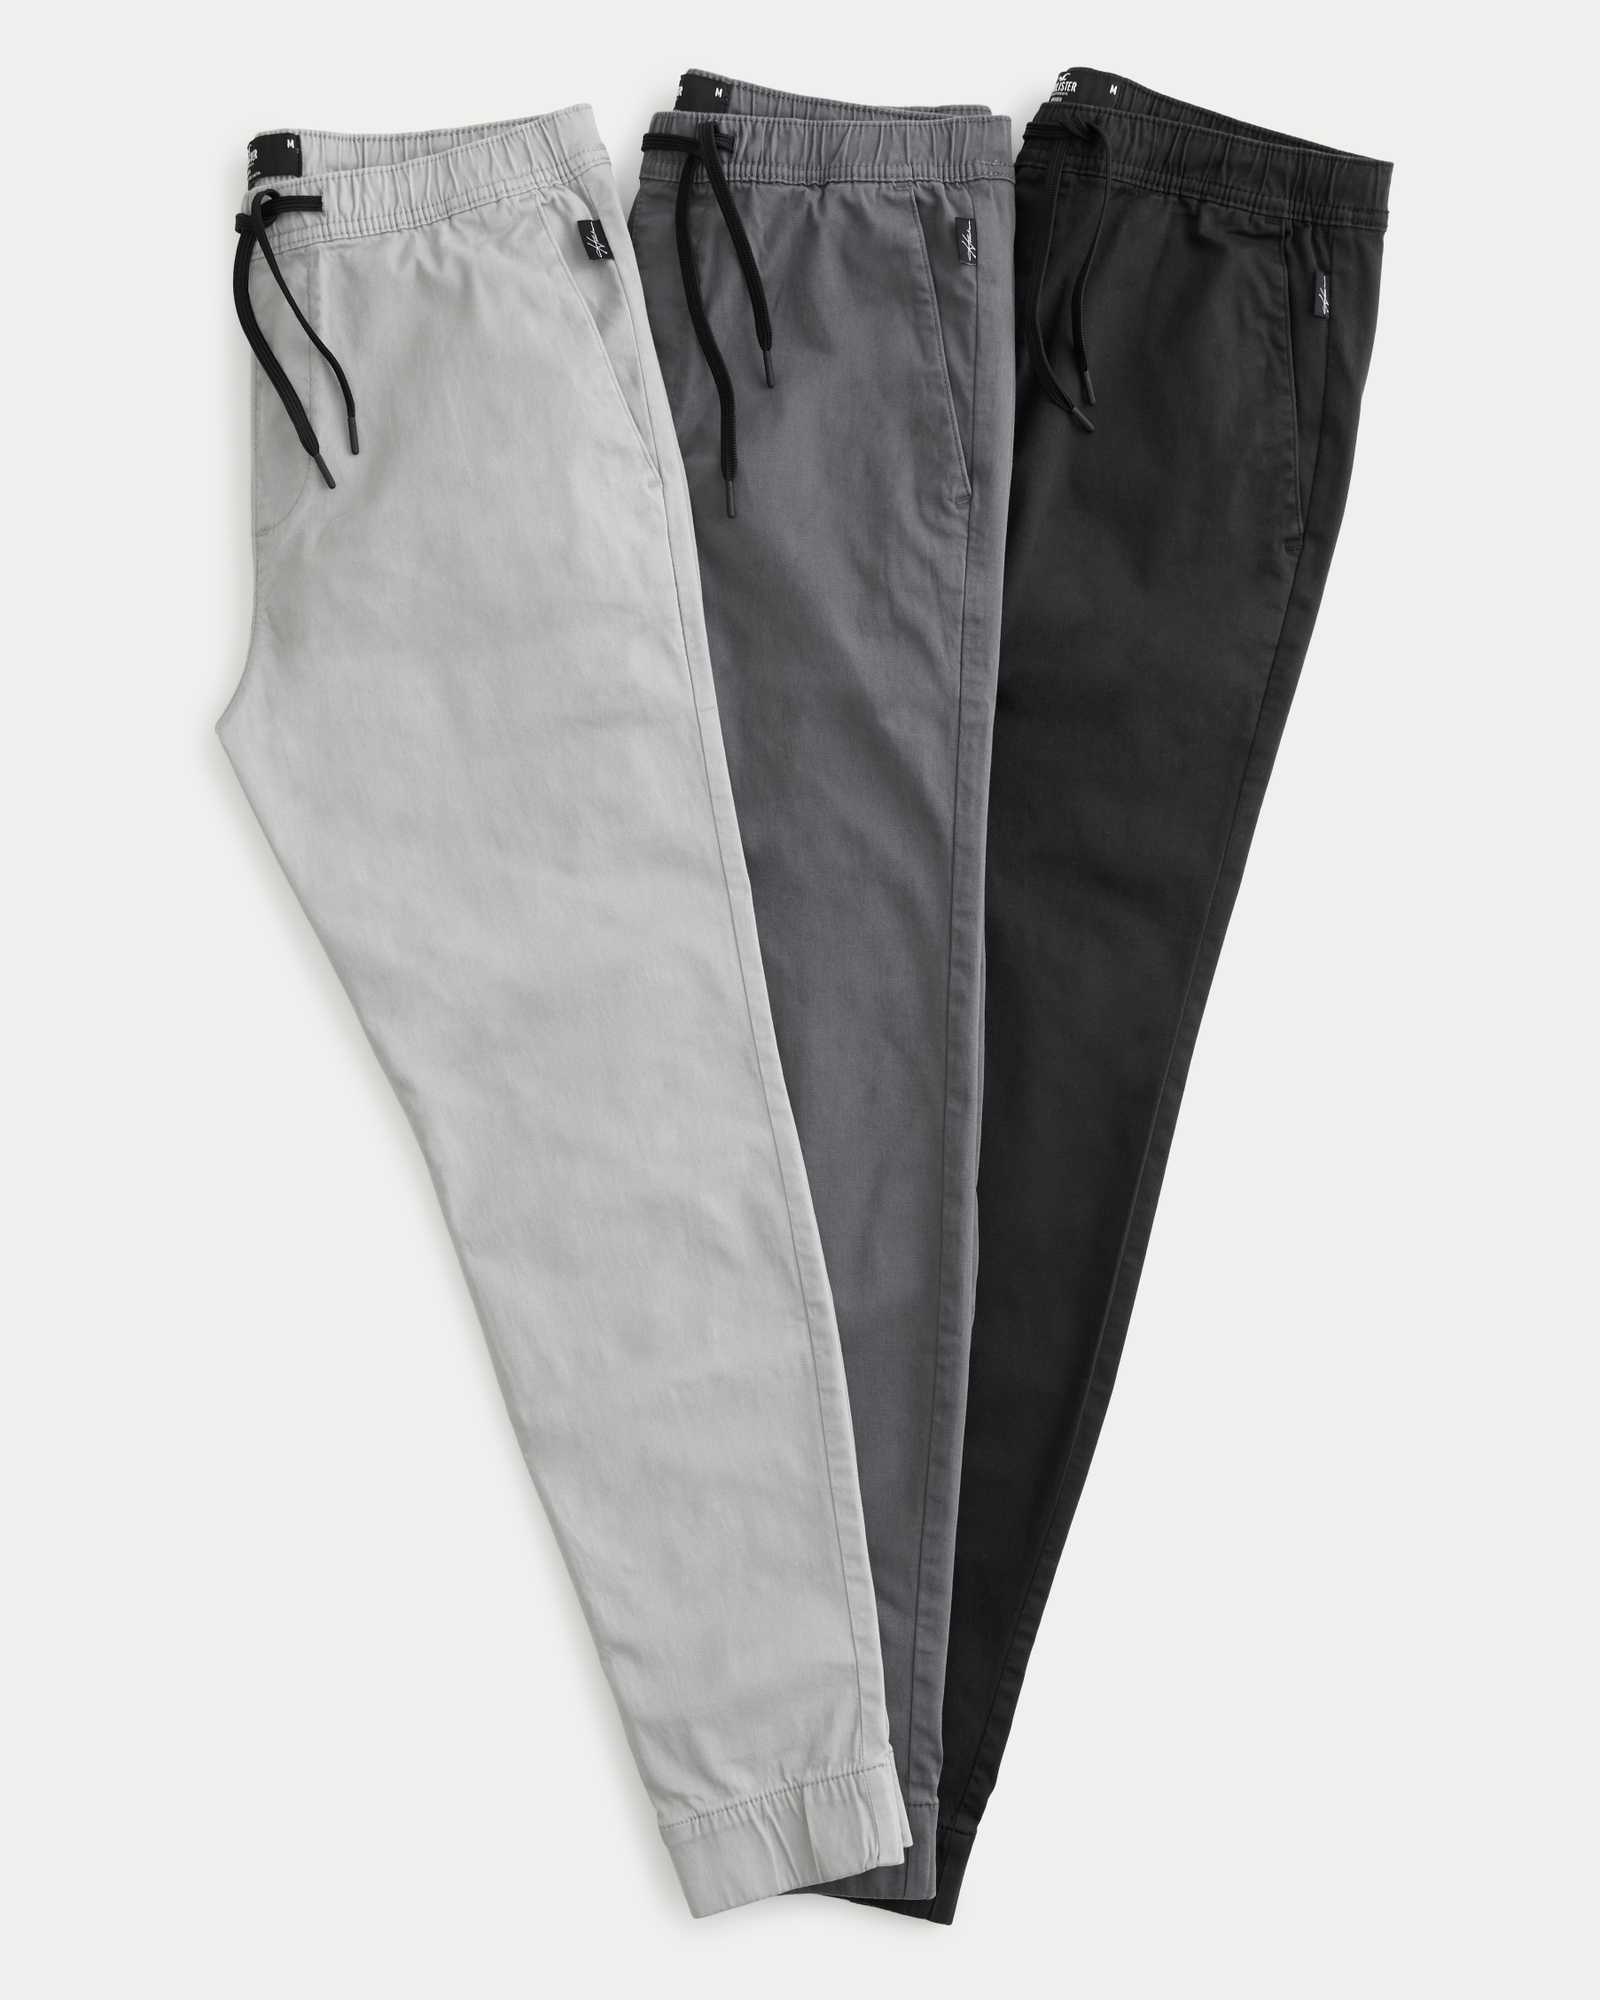 3 Pack Men's Fleece Jogger Pants with Zipper Pockets (M-2XL)